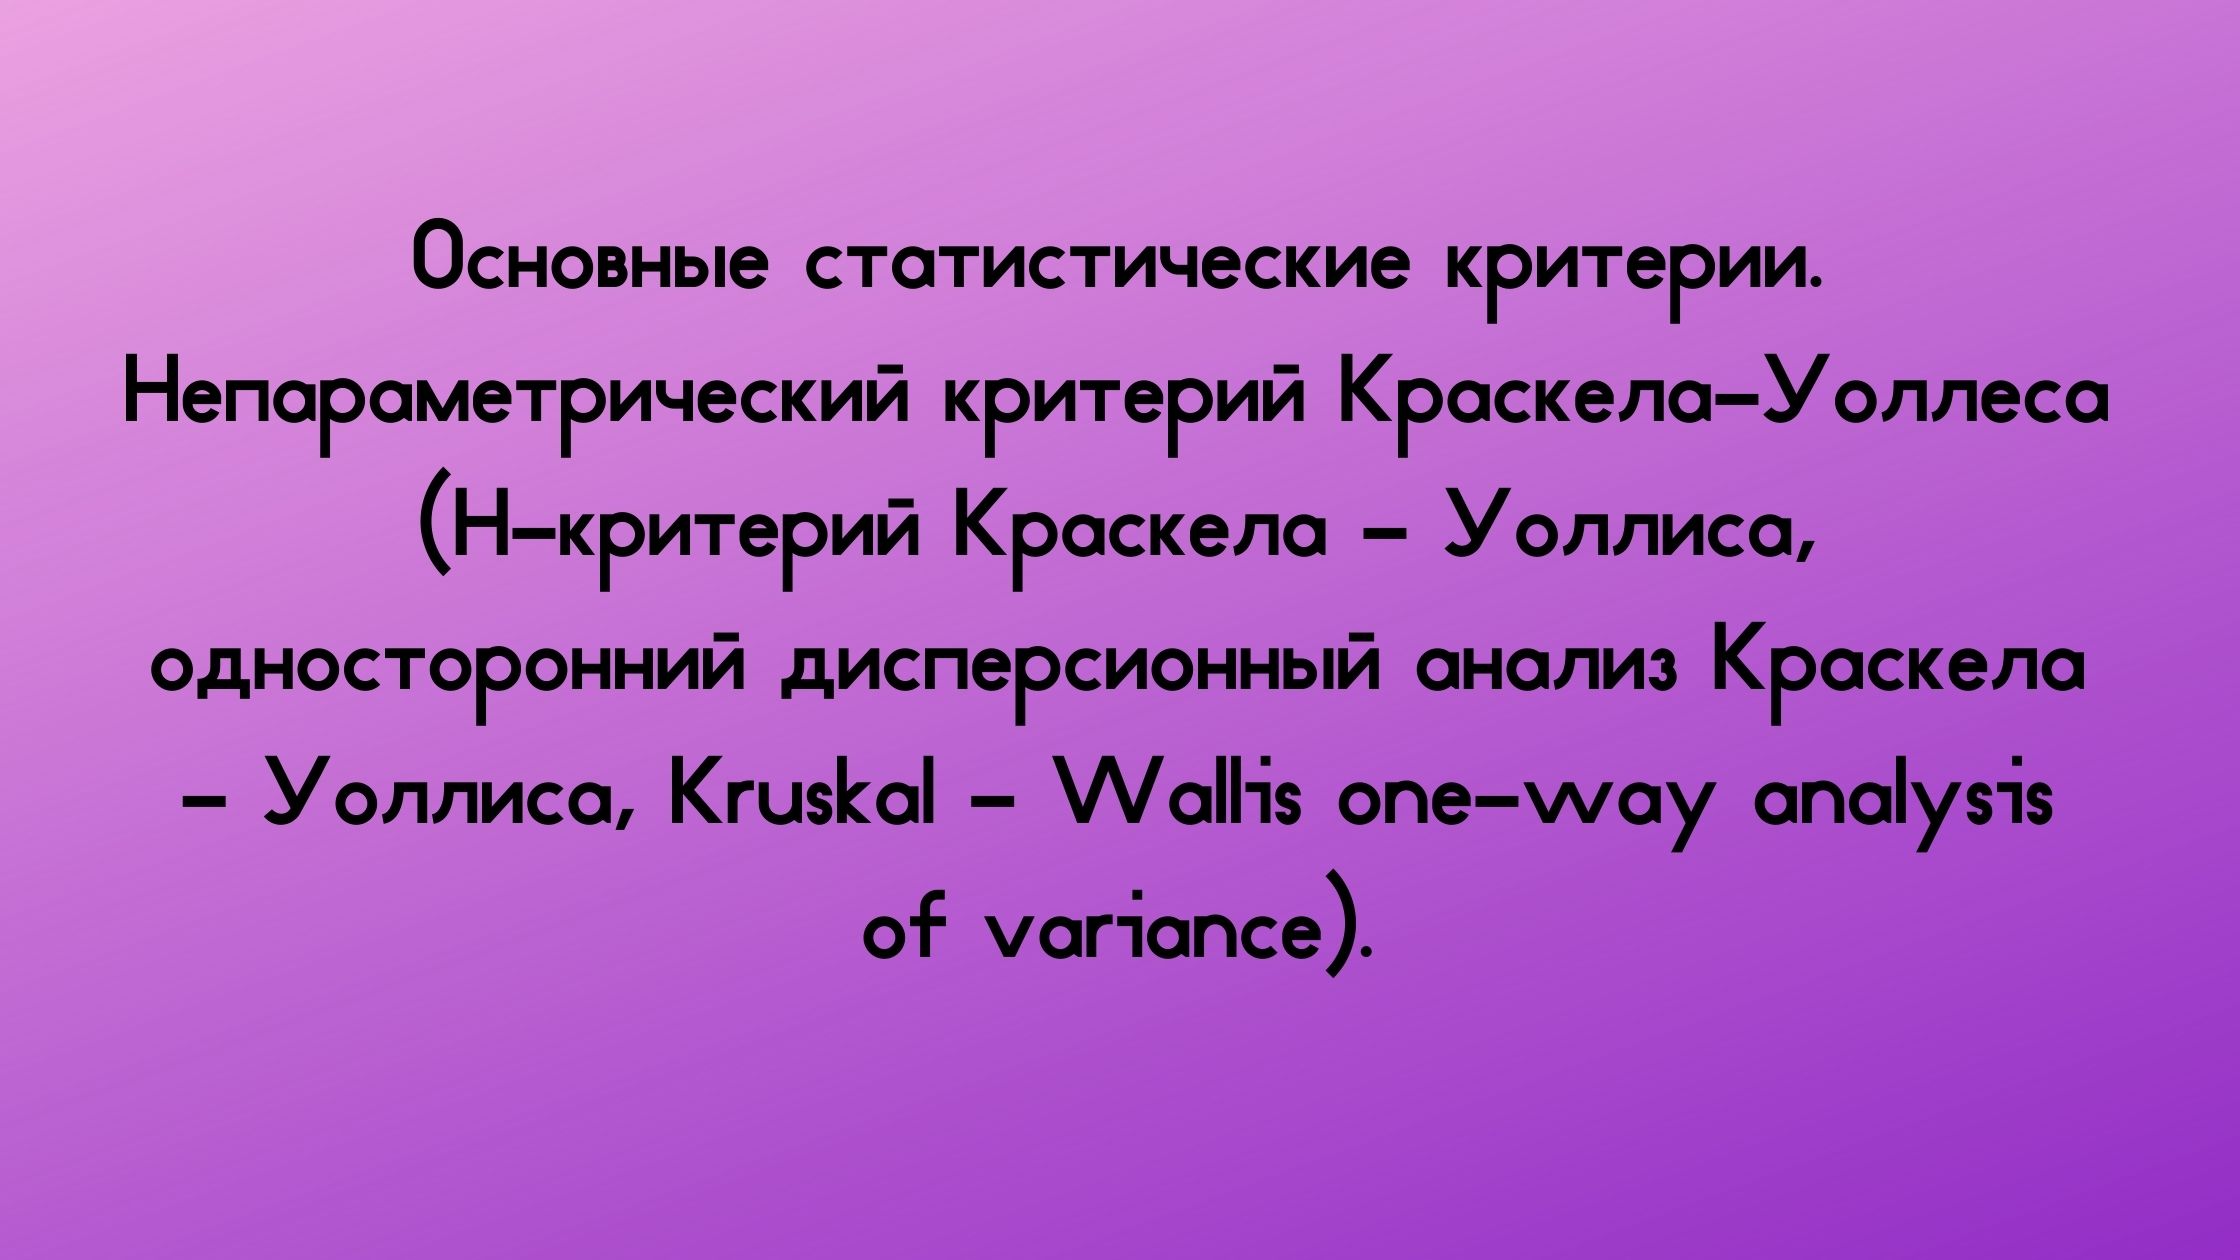 Основные статистические критерии. Непараметрический критерий Краскела-Уоллеса (H-критерий Краскела - Уоллиса, односторонний дисперсионный анализ Краскела - Уоллиса, Kruskal - Wallis one-way analysis of variance).